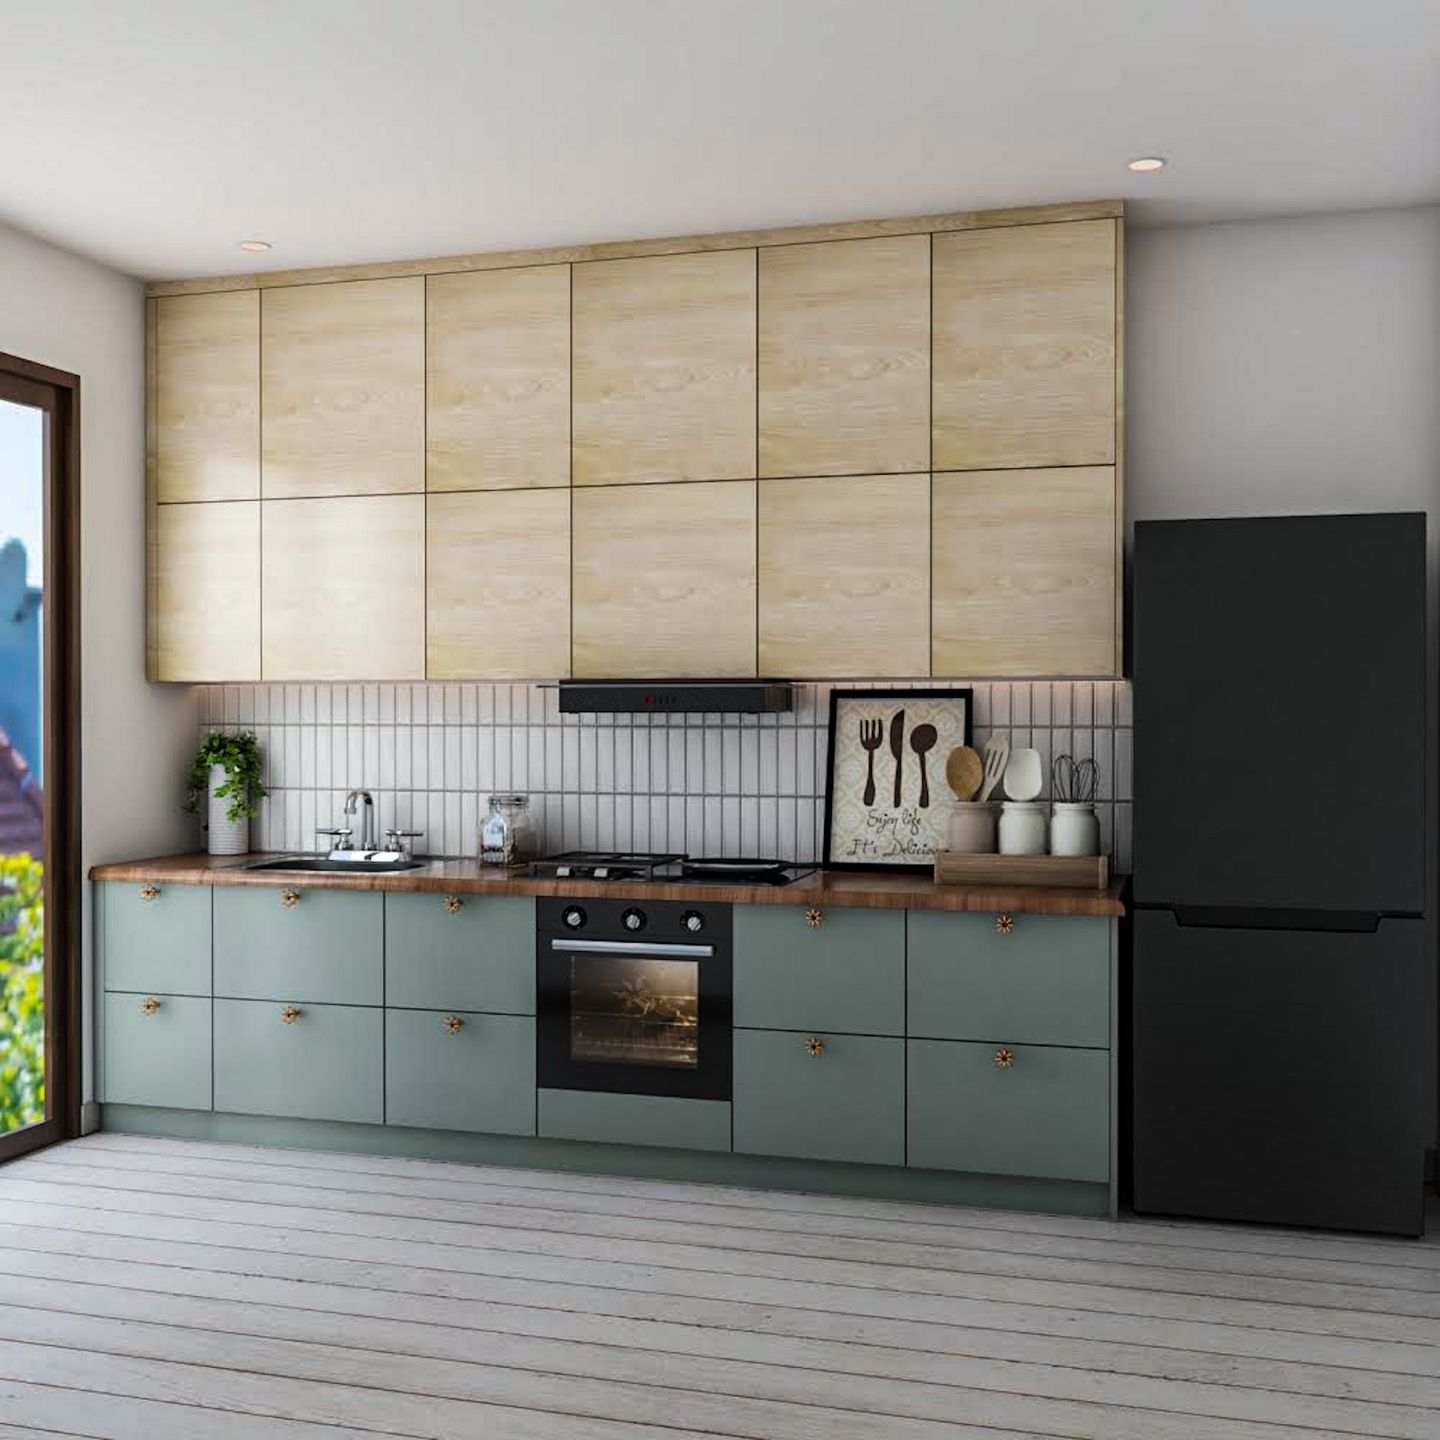 Straight Green And Beige Kitchen Design - Livspace